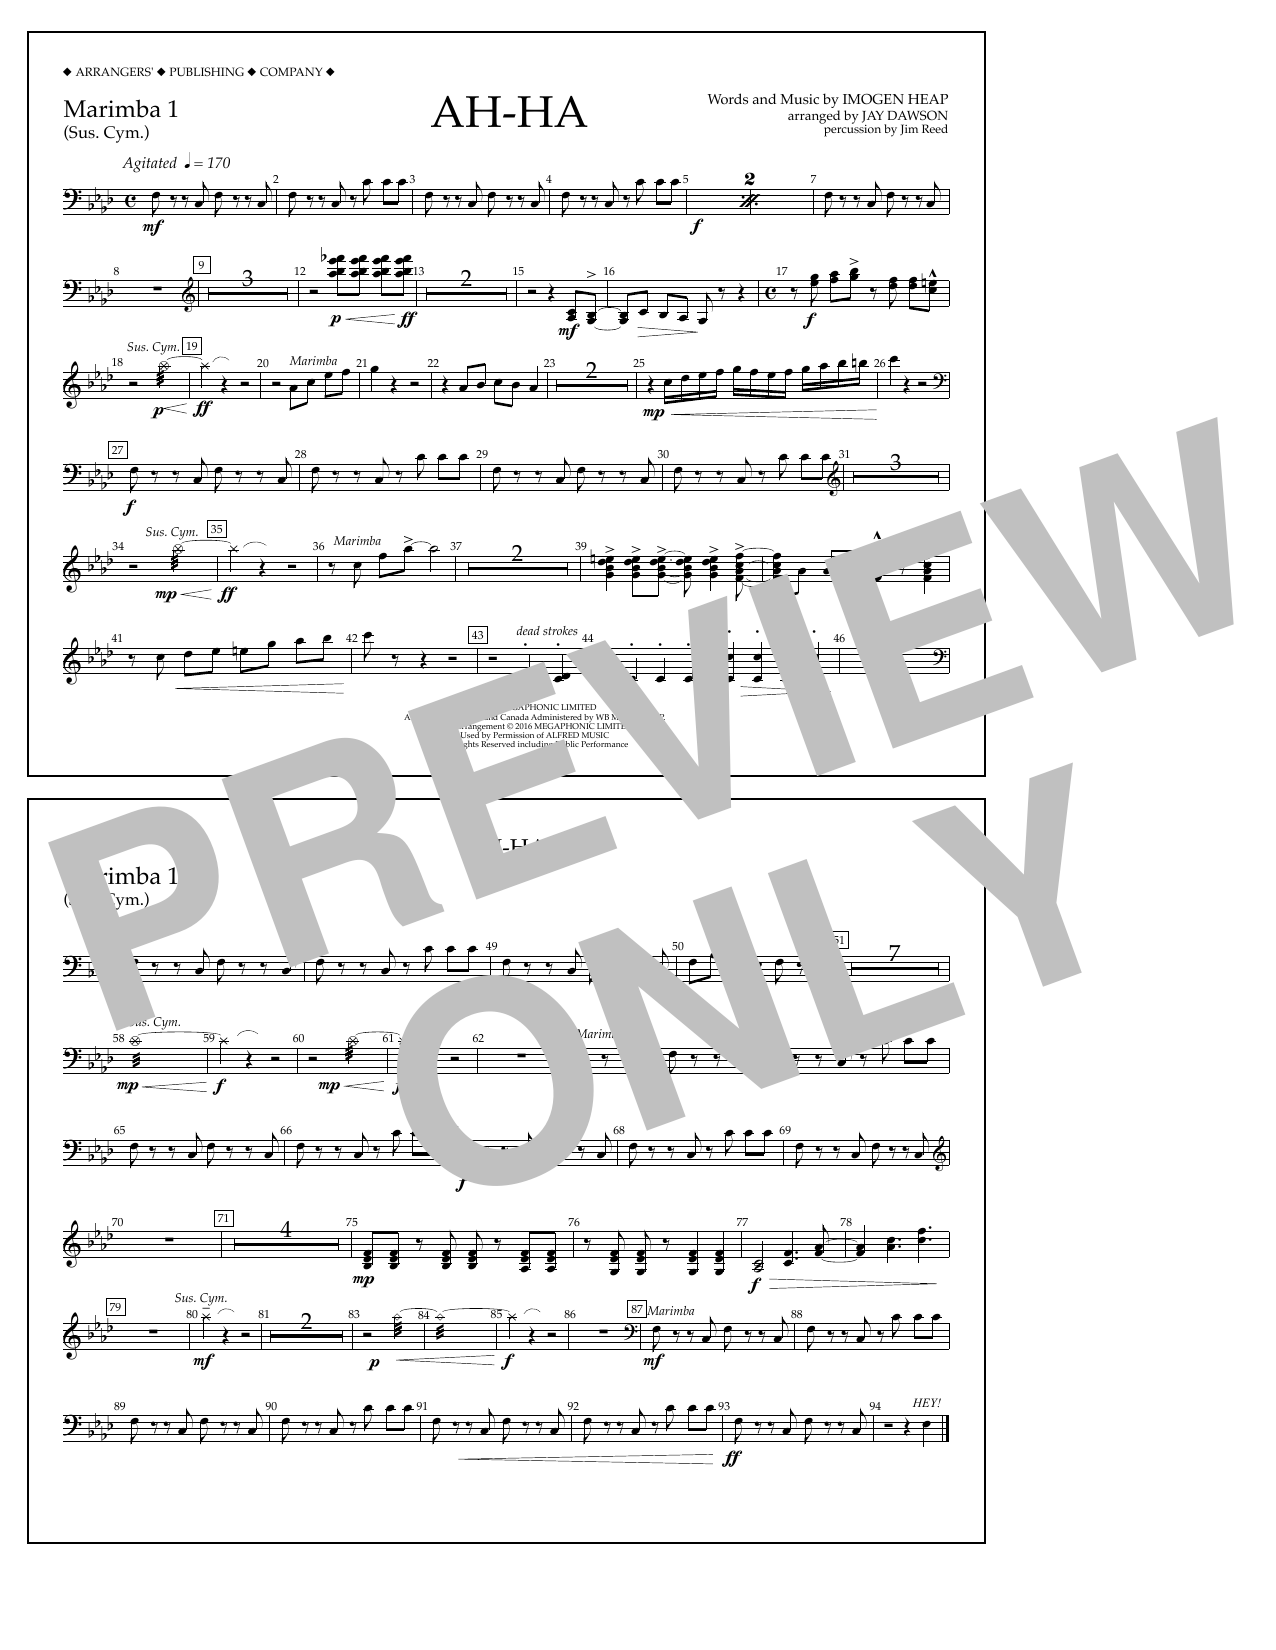 Jay Dawson Ah-ha - Marimba 1 Sheet Music Notes & Chords for Marching Band - Download or Print PDF